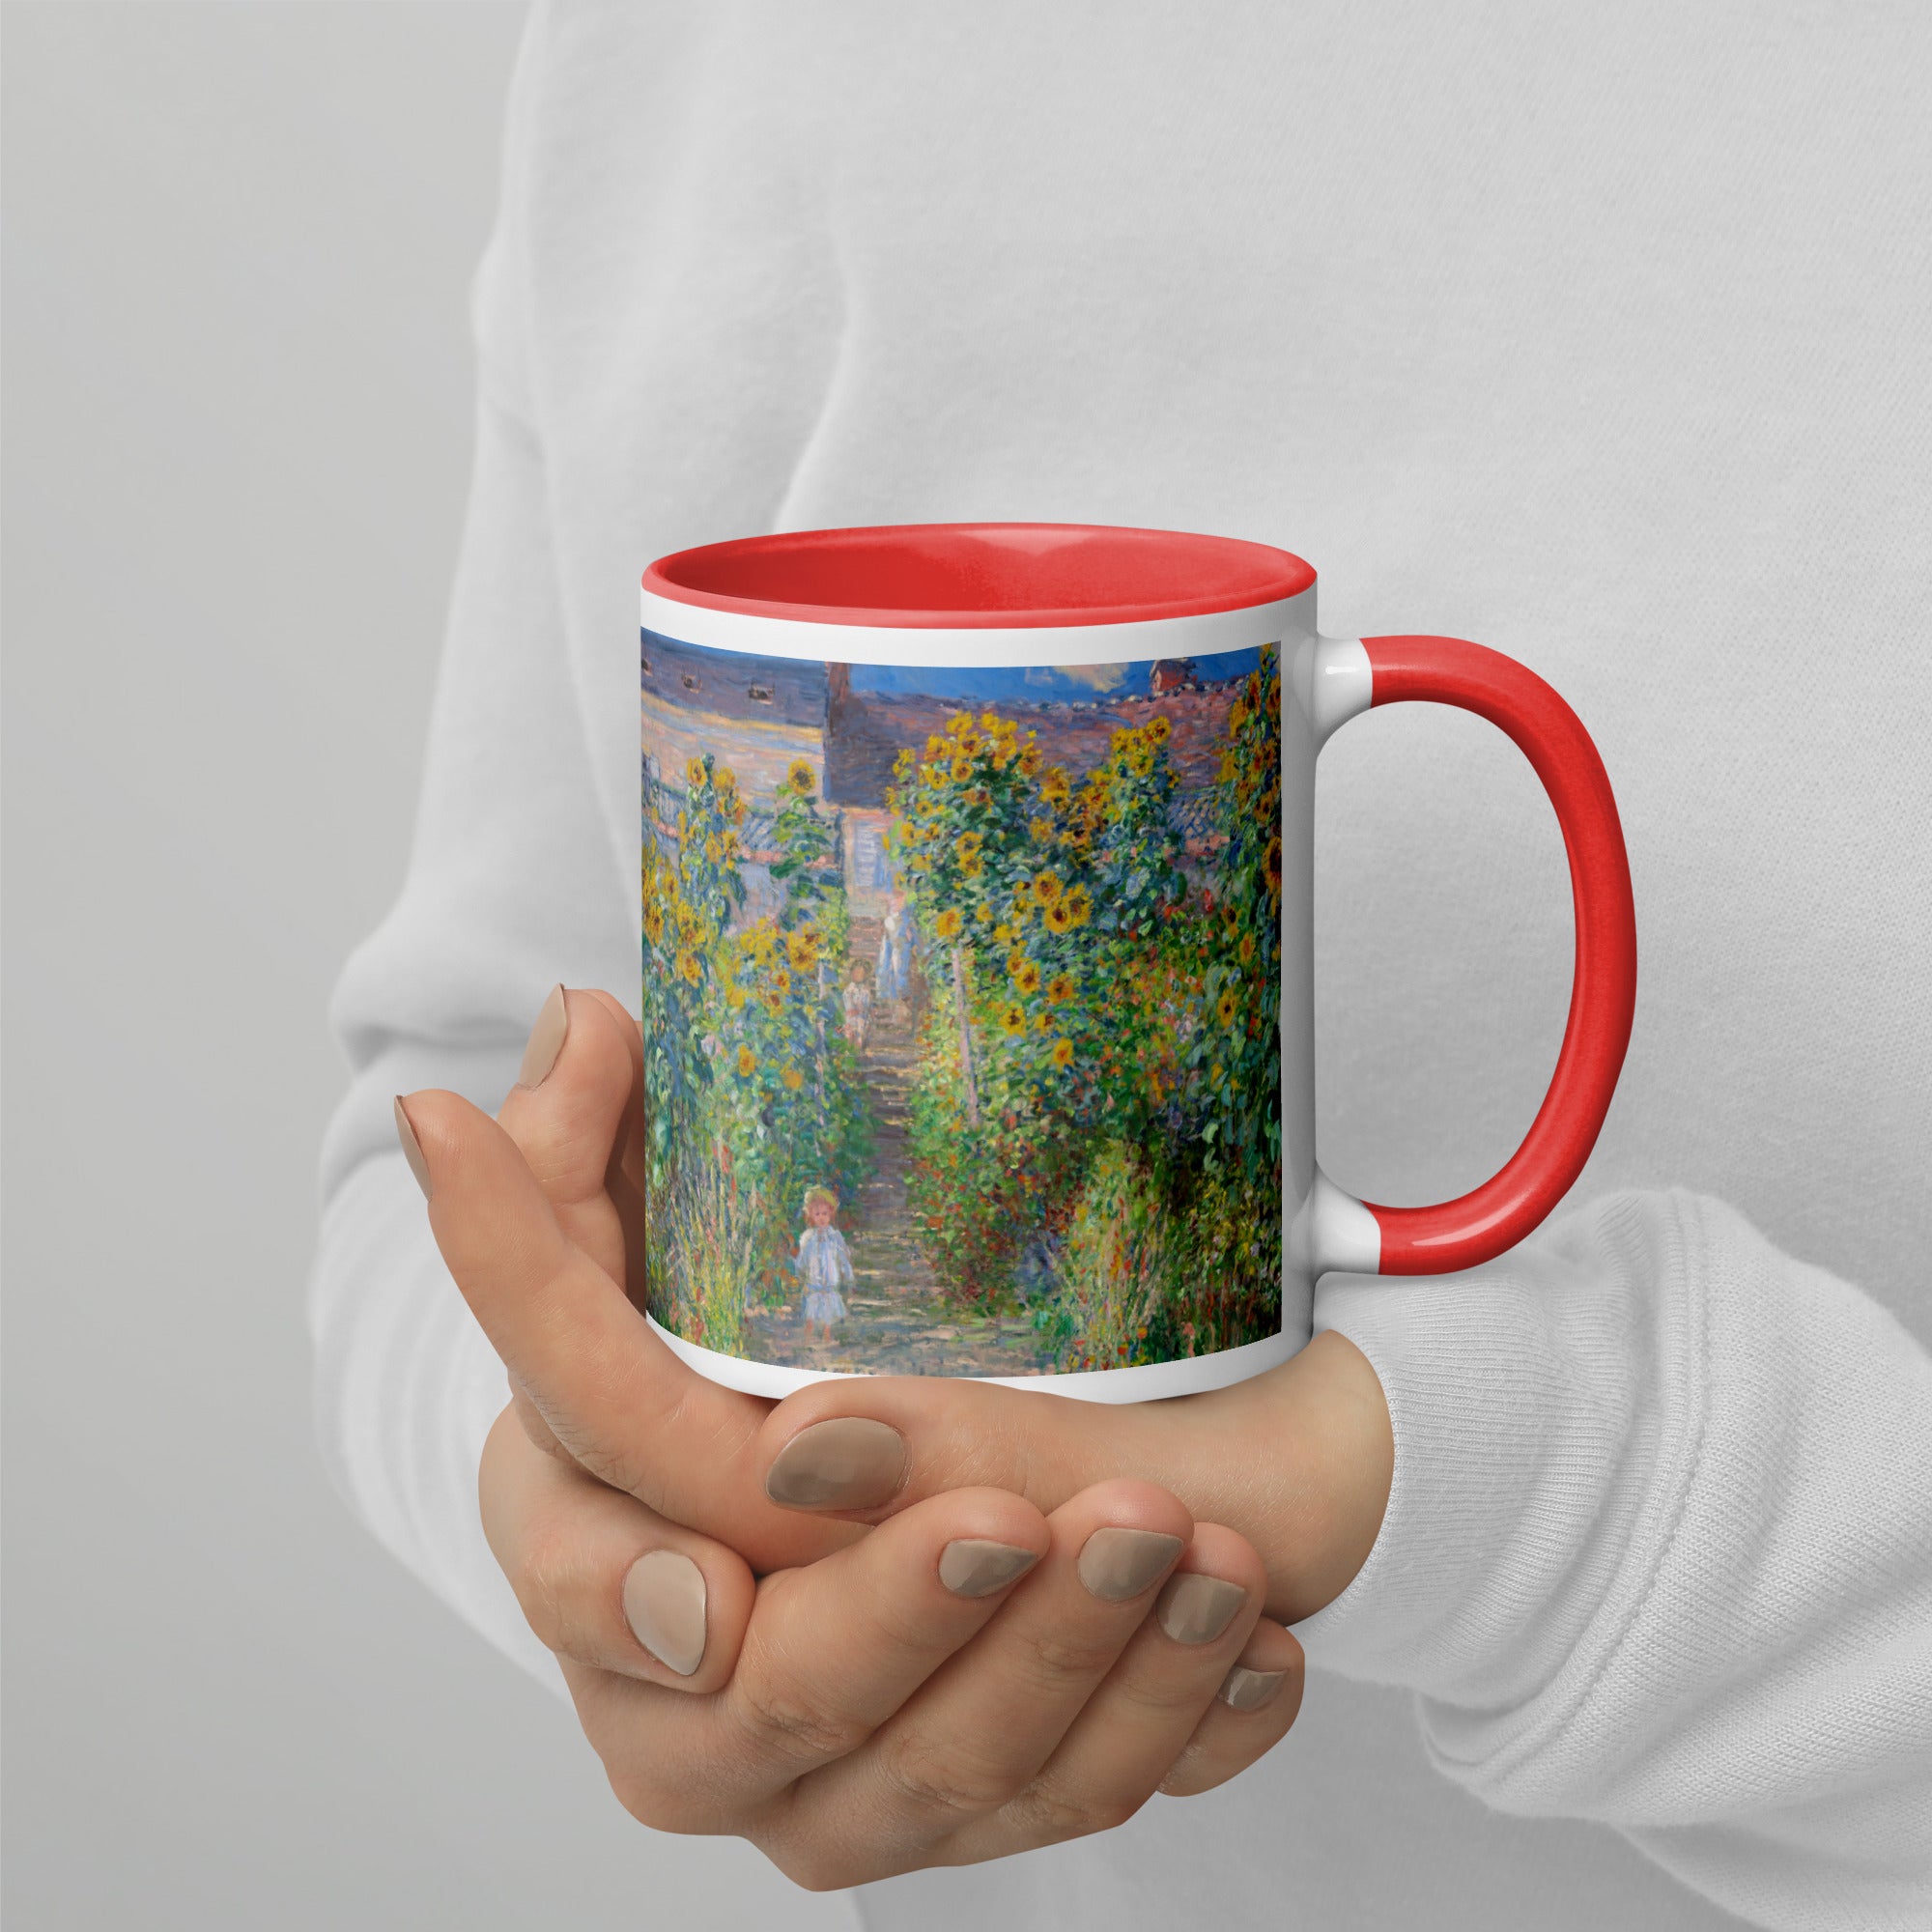 Claude Monet 'The Artist's Garden at Vétheuil' Famous Painting Ceramic Mug | Premium Art Mug